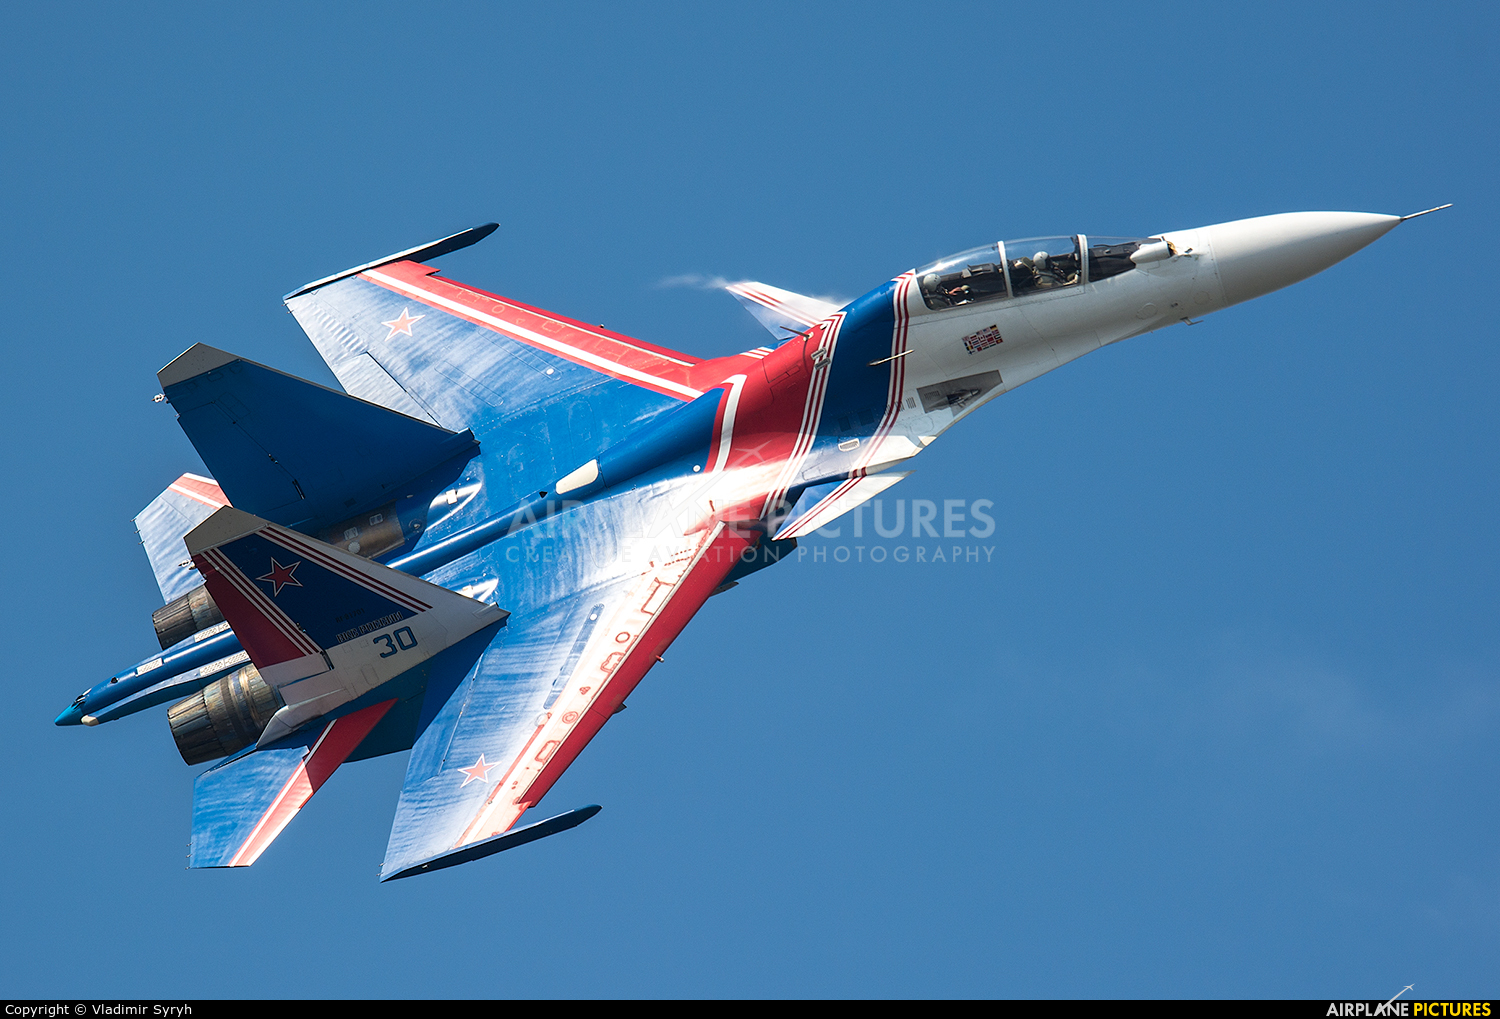 Russia - Air Force "Russian Knights" RF-81701 aircraft at 